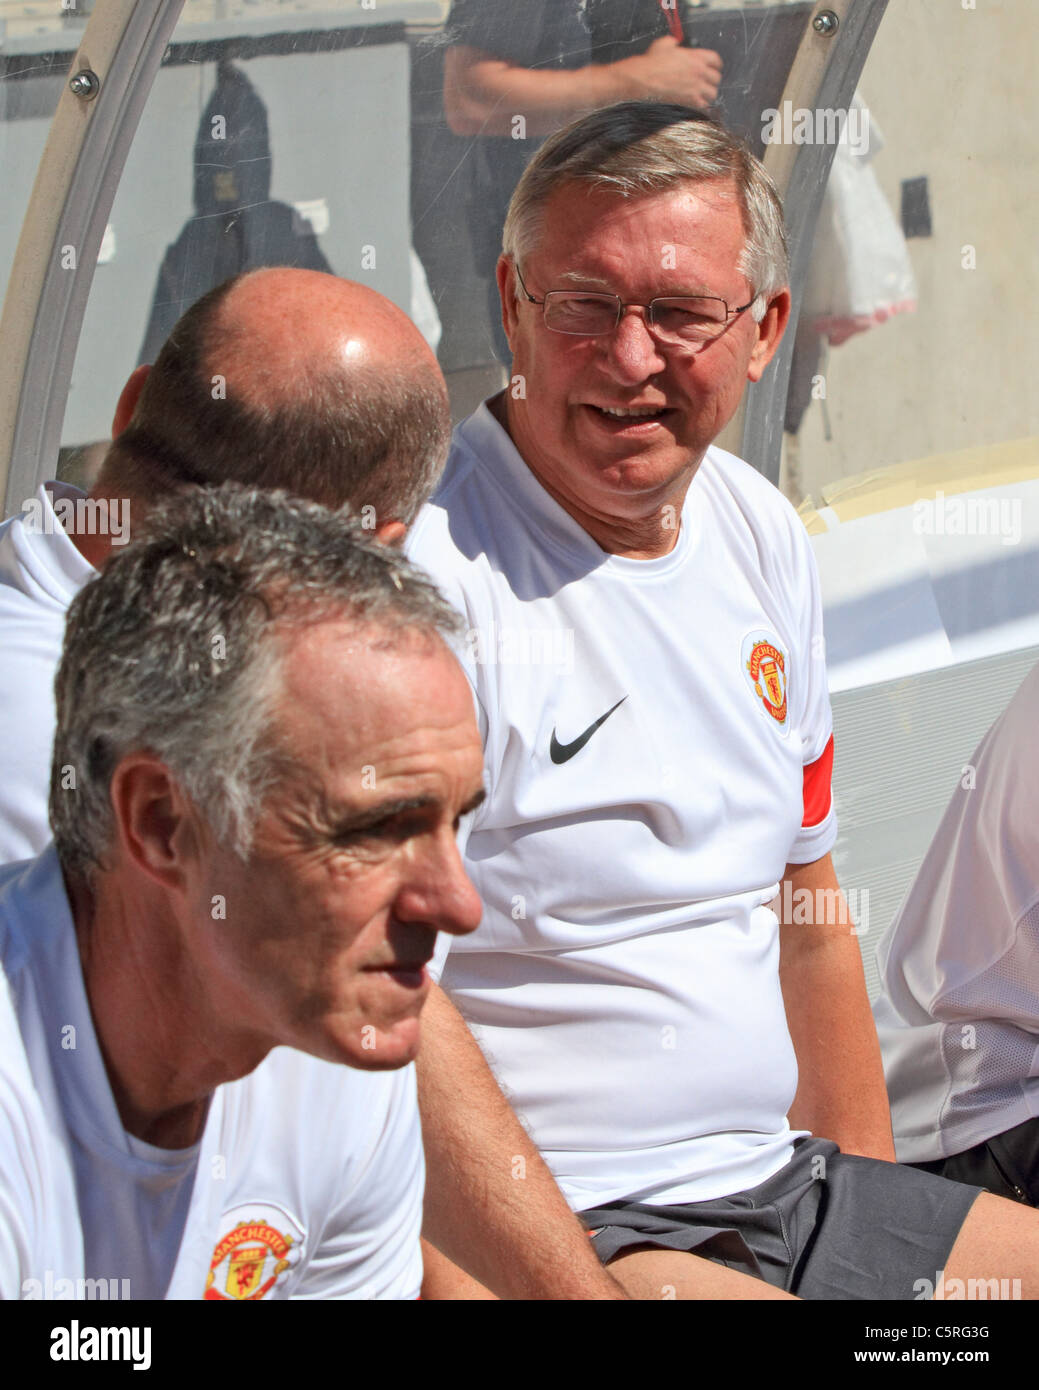 Manager de Manchester United, Sir Alex Ferguson (R), discute avec son entraîneur sur le banc, par rapport à l'incendie de Chicago, à Soldier Field. Banque D'Images